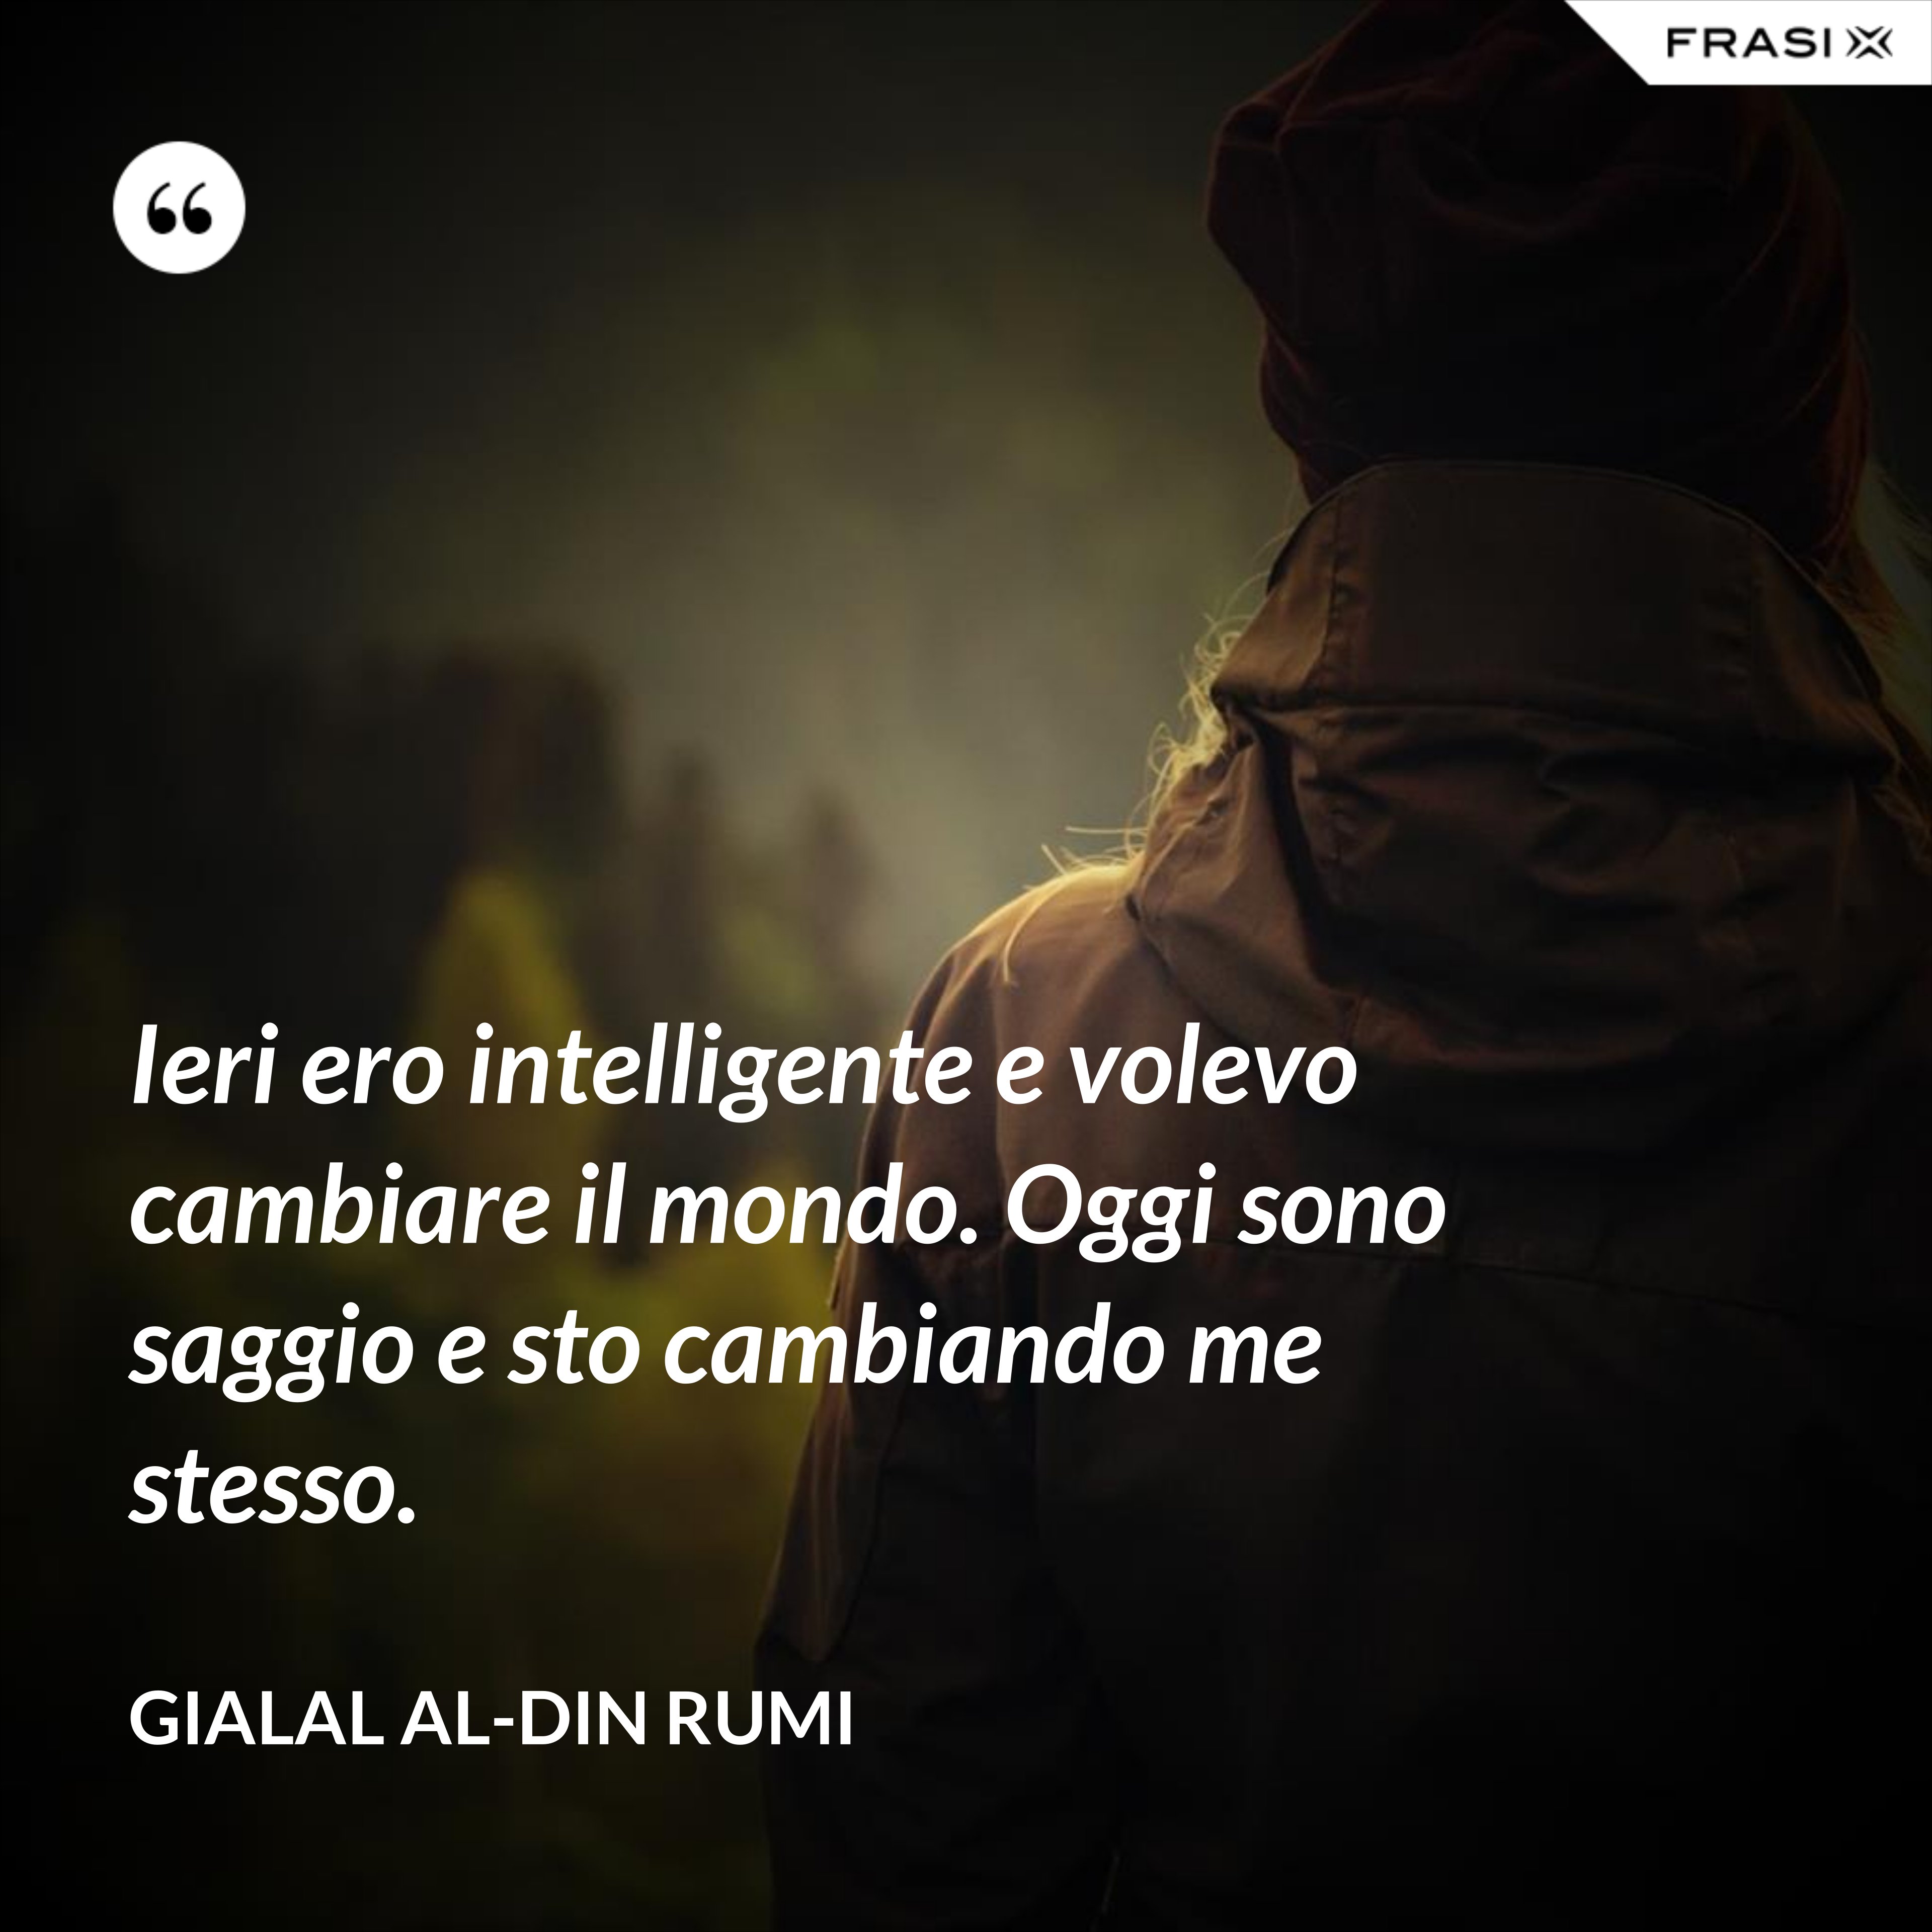 Ieri ero intelligente e volevo cambiare il mondo. Oggi sono saggio e sto cambiando me stesso. - Gialal al-Din Rumi